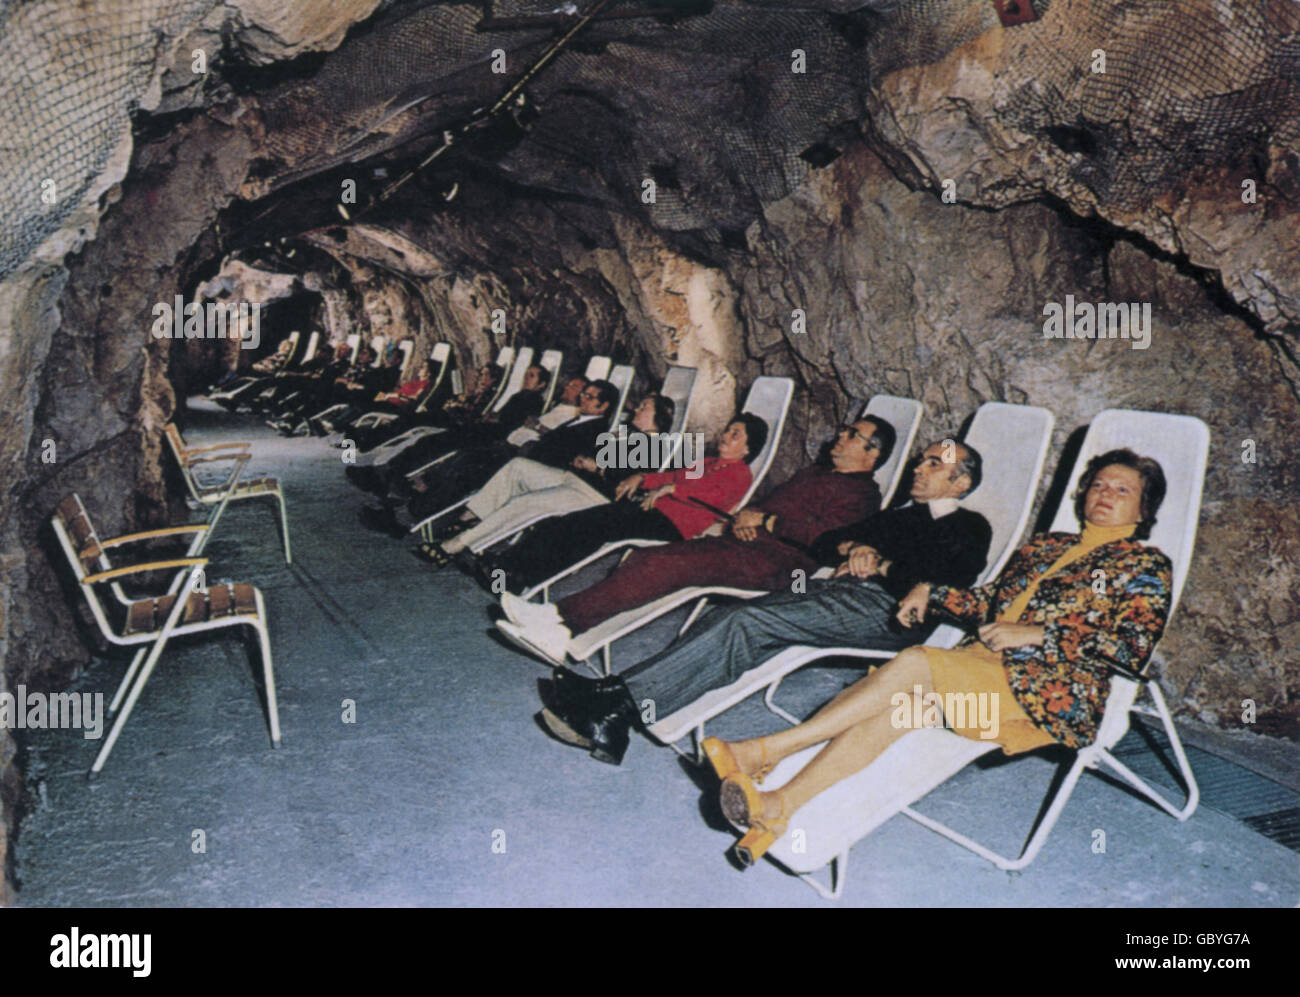 tourisme, spa clients se détendre dans les chaises longues, le tunnel de radon, Bad Kreuznach, années 1970, droits supplémentaires-Clearences-non disponible Banque D'Images